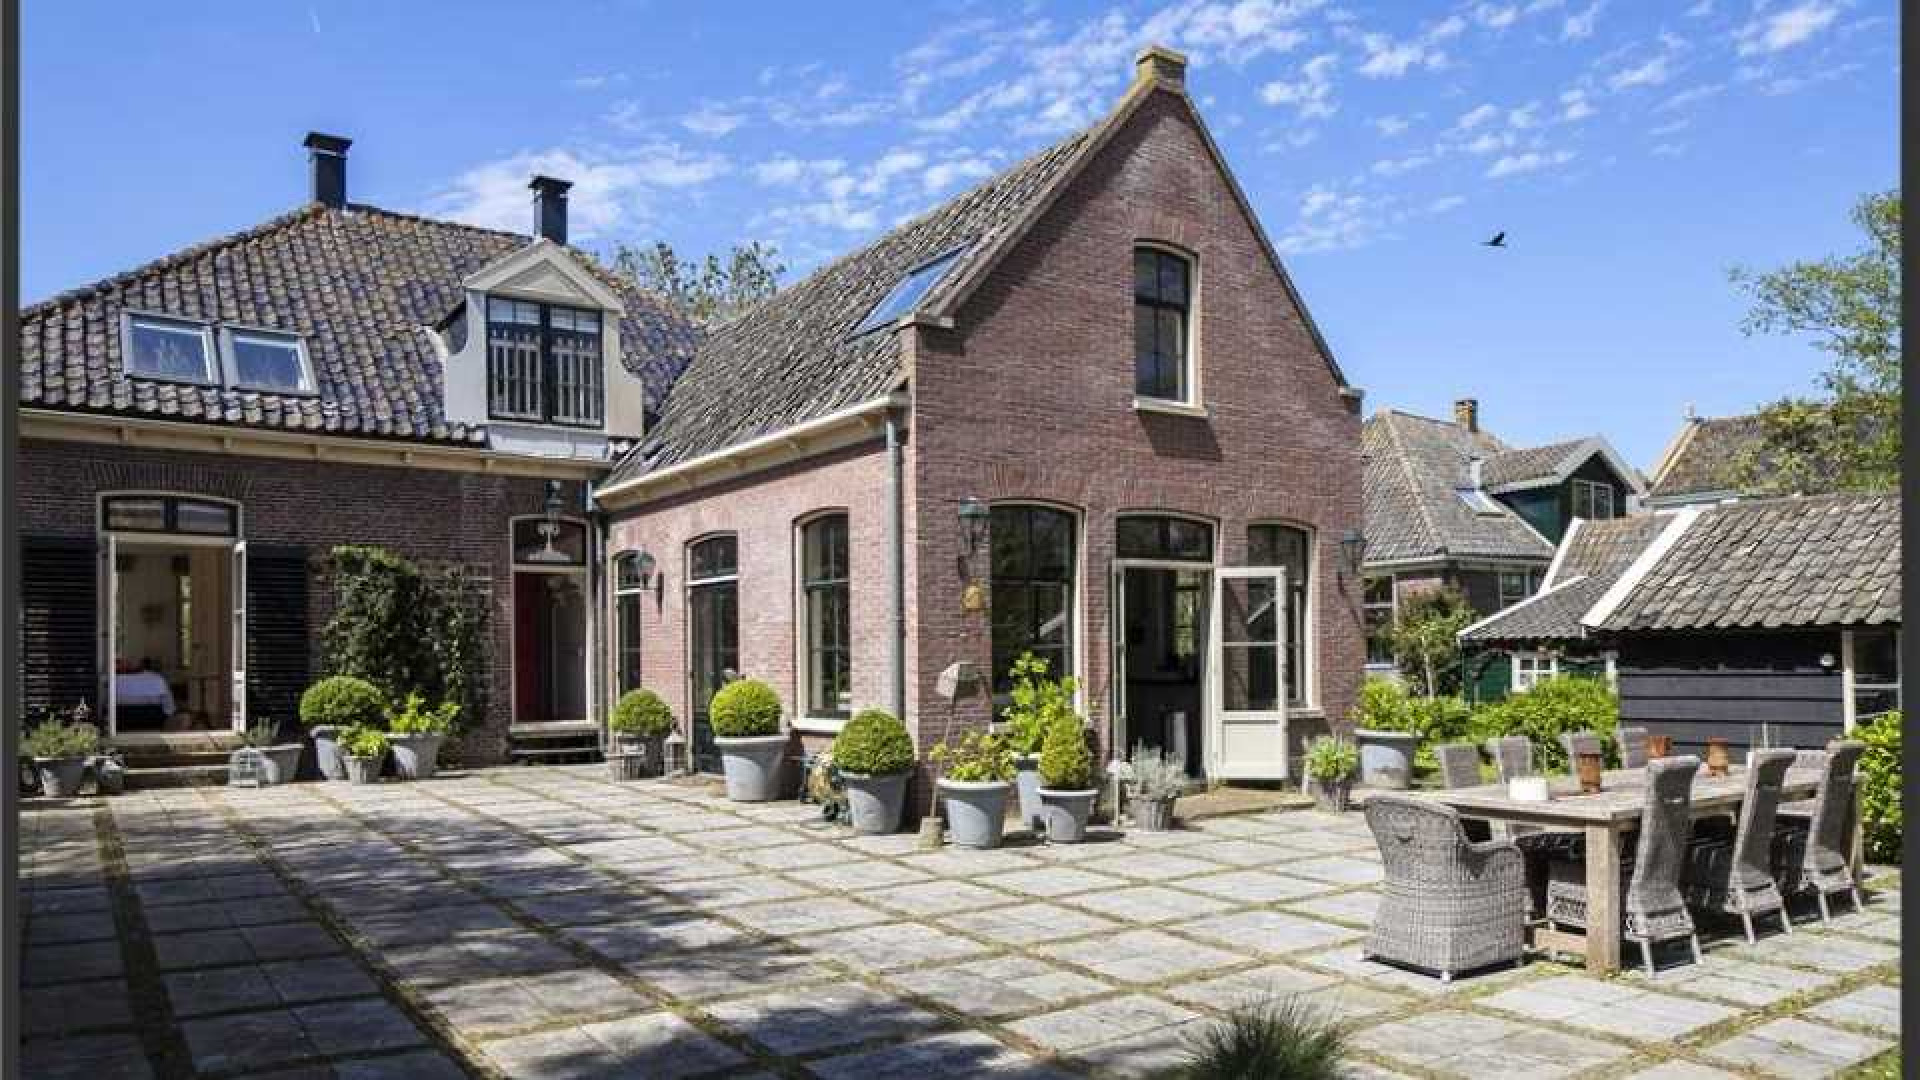 Trijntje Oosterhuis maakt eindelijk vraagprijs van haar villa bekend. Zie foto's